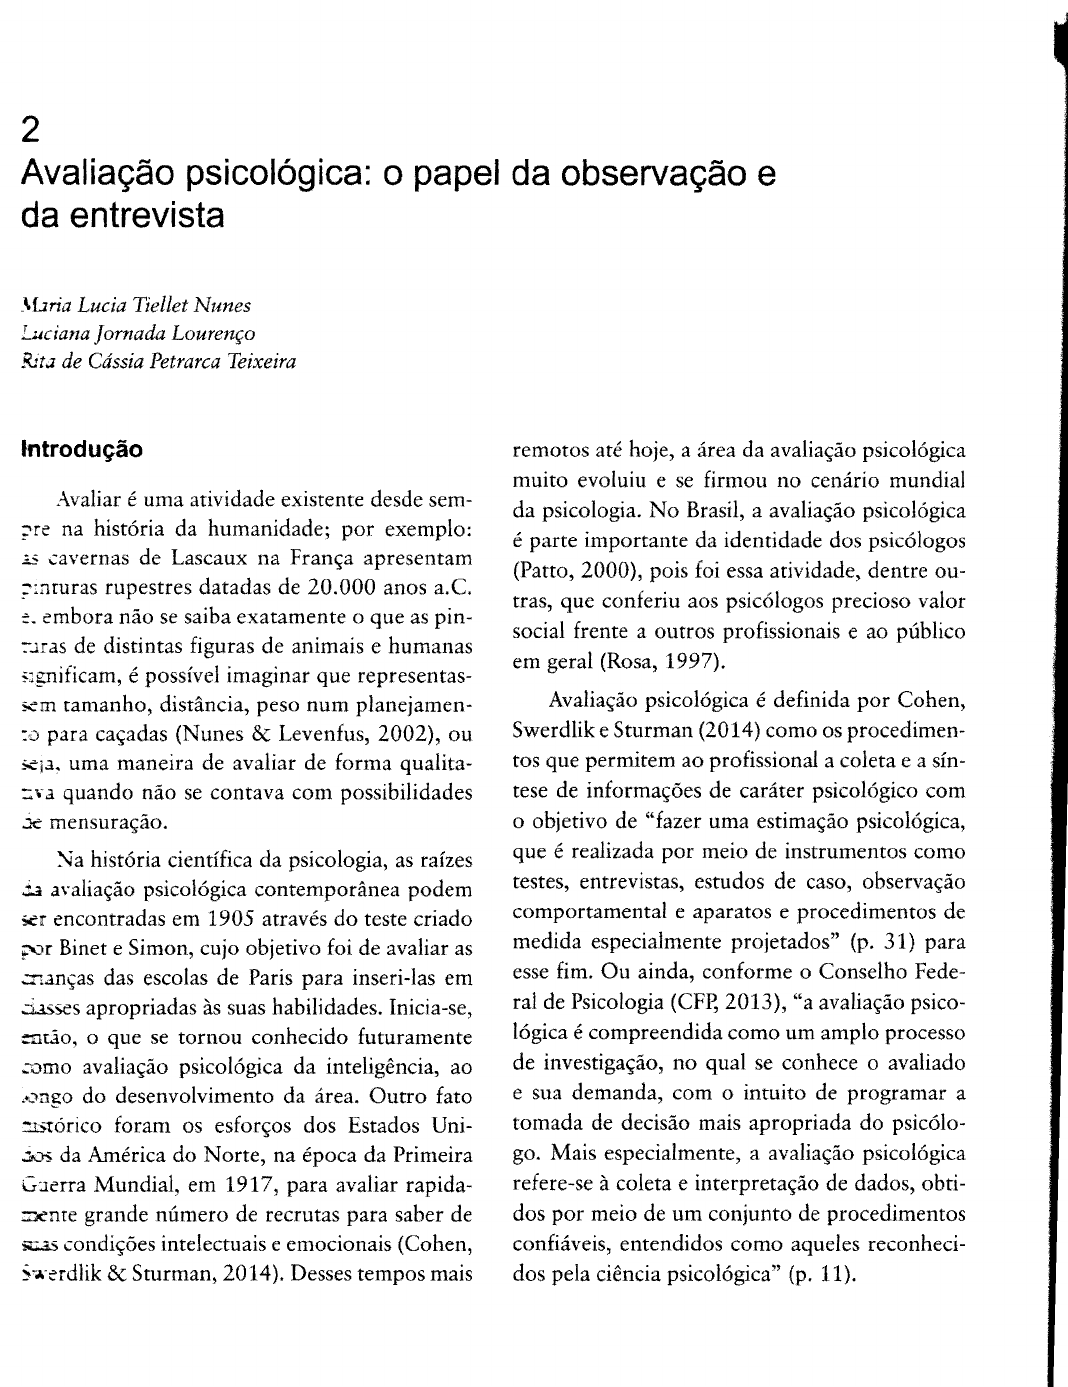 ROTEIRO DE ENTREVISTA (ANAMNESE) PARA AVALIAÇÃO PSICOLÓGICA.l